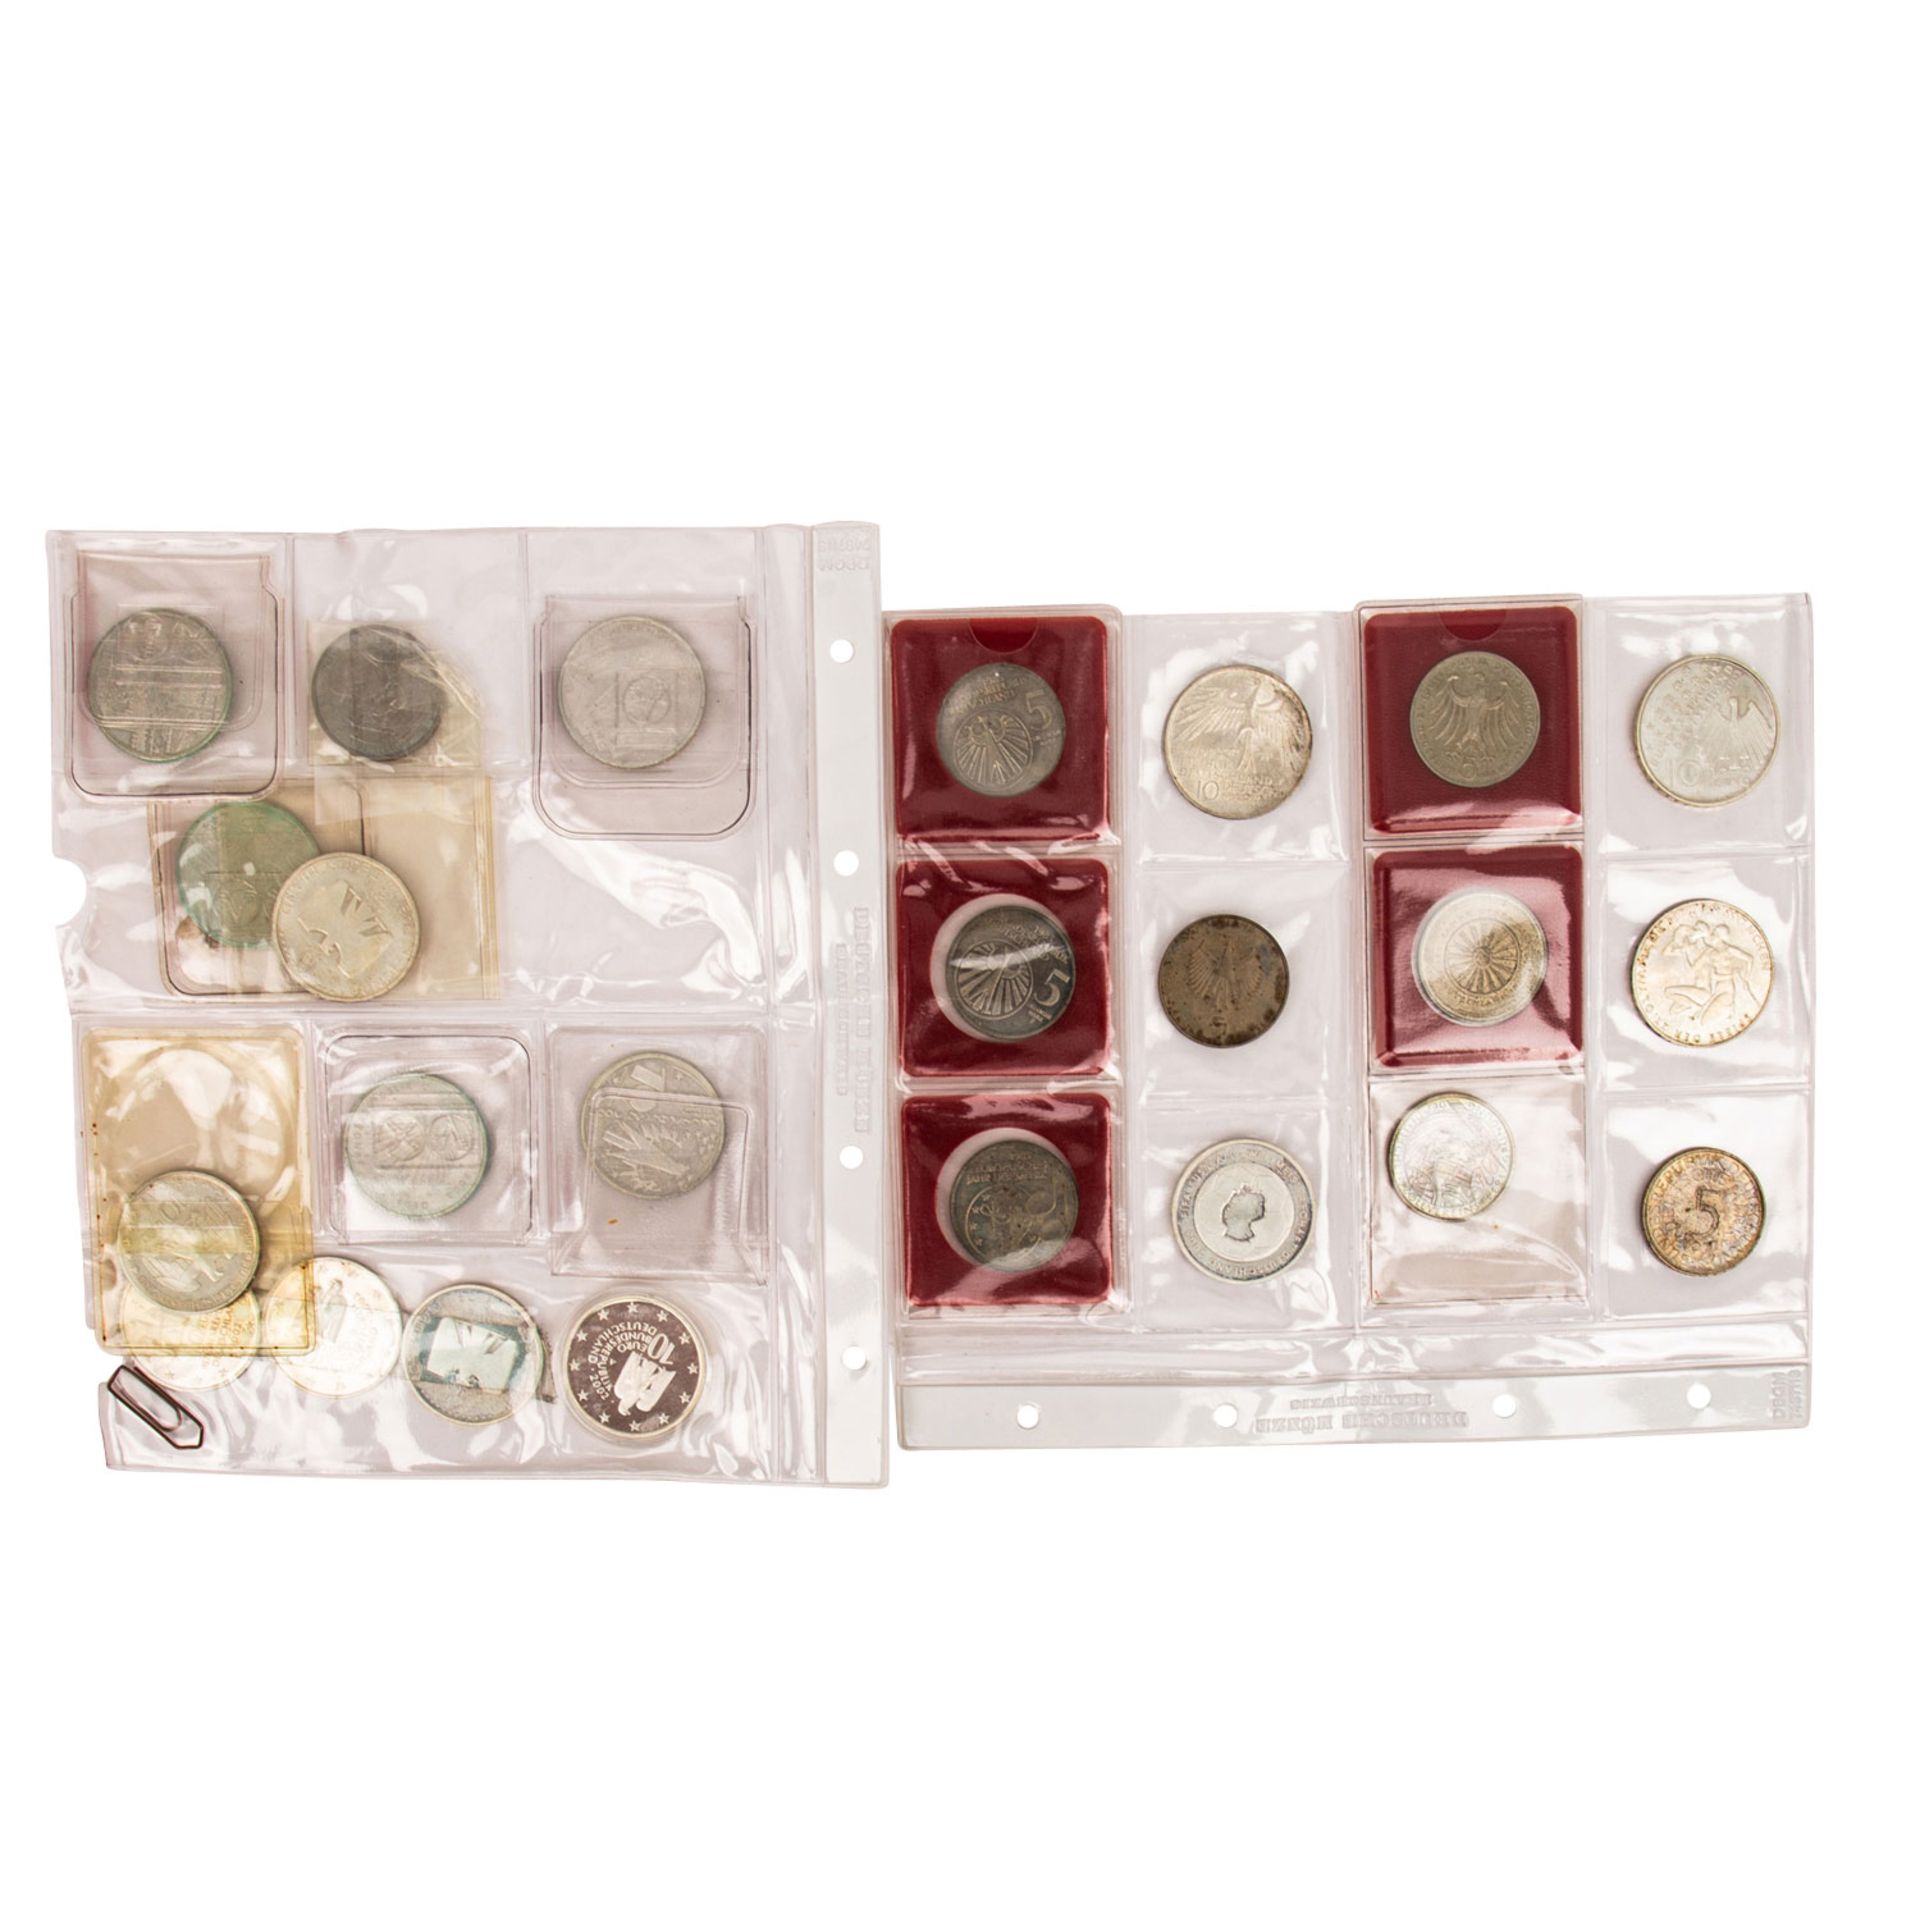 BRD - Konvolut moderner Gedenkprägungen, überwiegend DM Münzen, teils in Silber. FRG - A collection